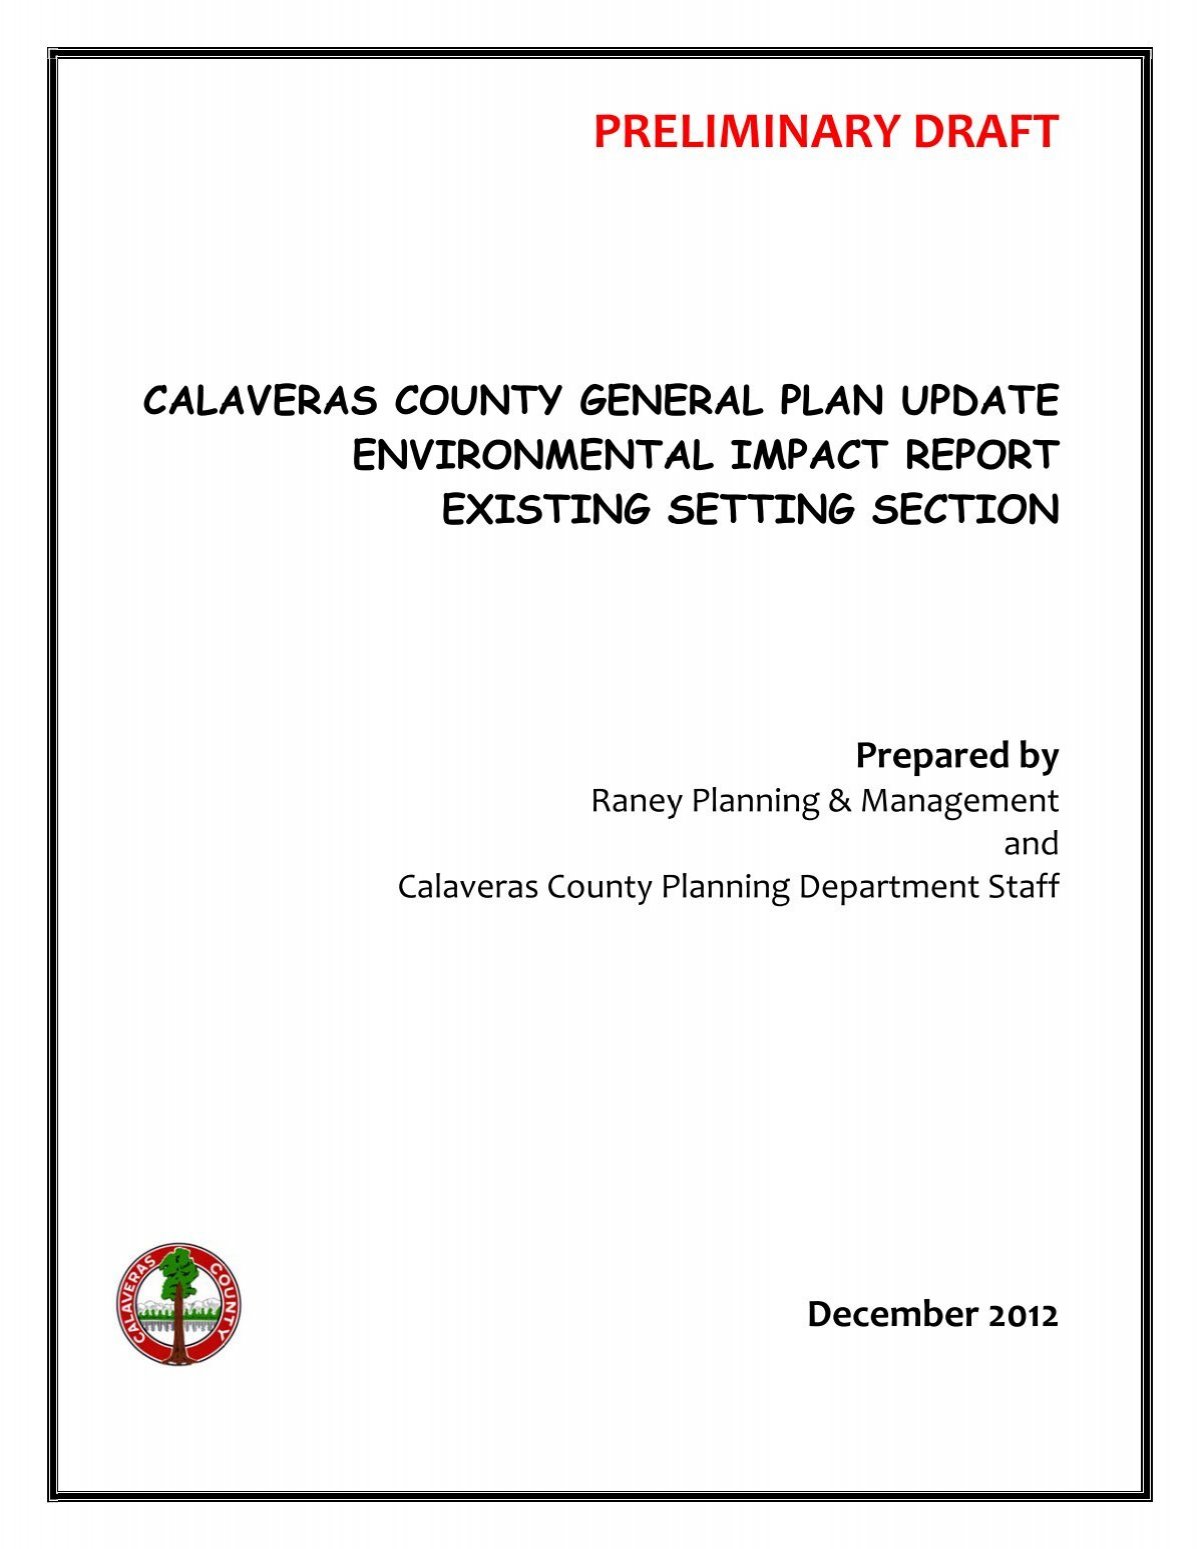 Figure 4.12-1 - Calaveras County